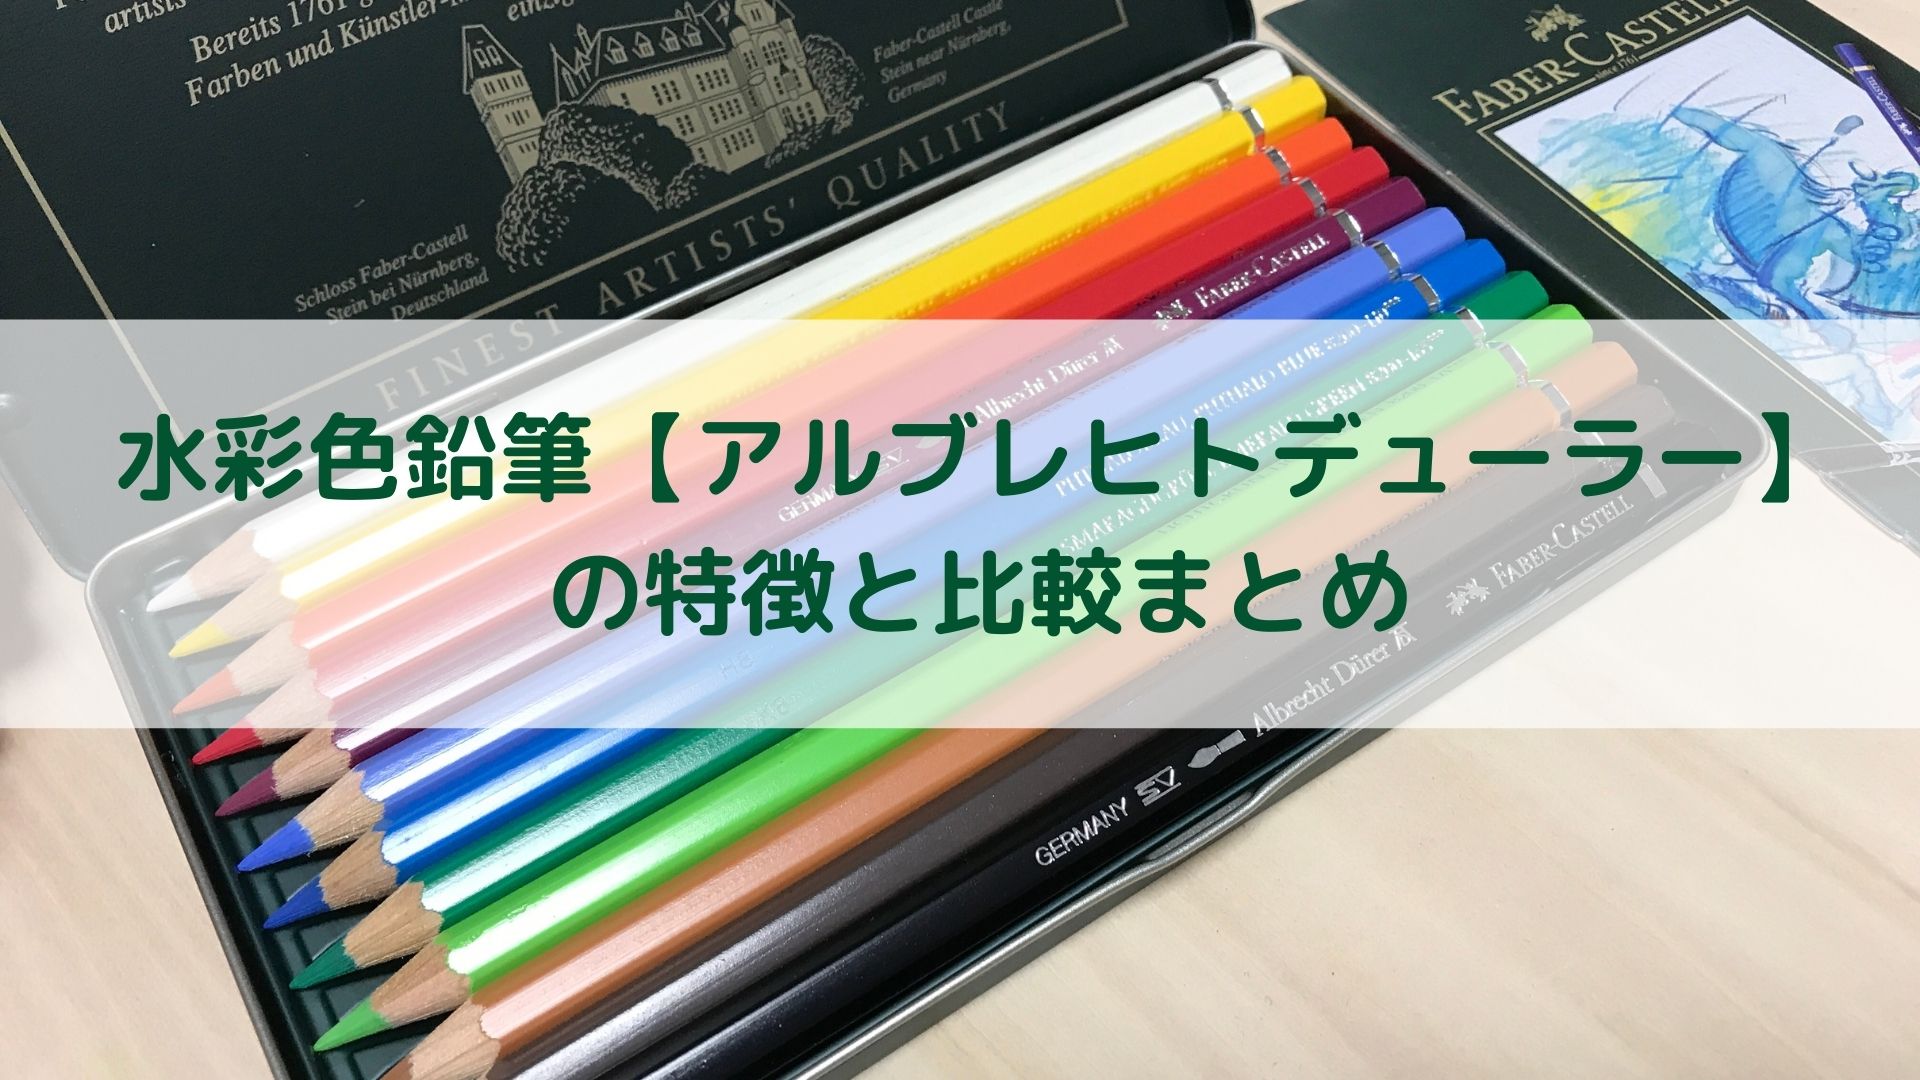 水彩色鉛筆【アルブレヒトデューラー】の特徴と比較まとめ【ファーバー 